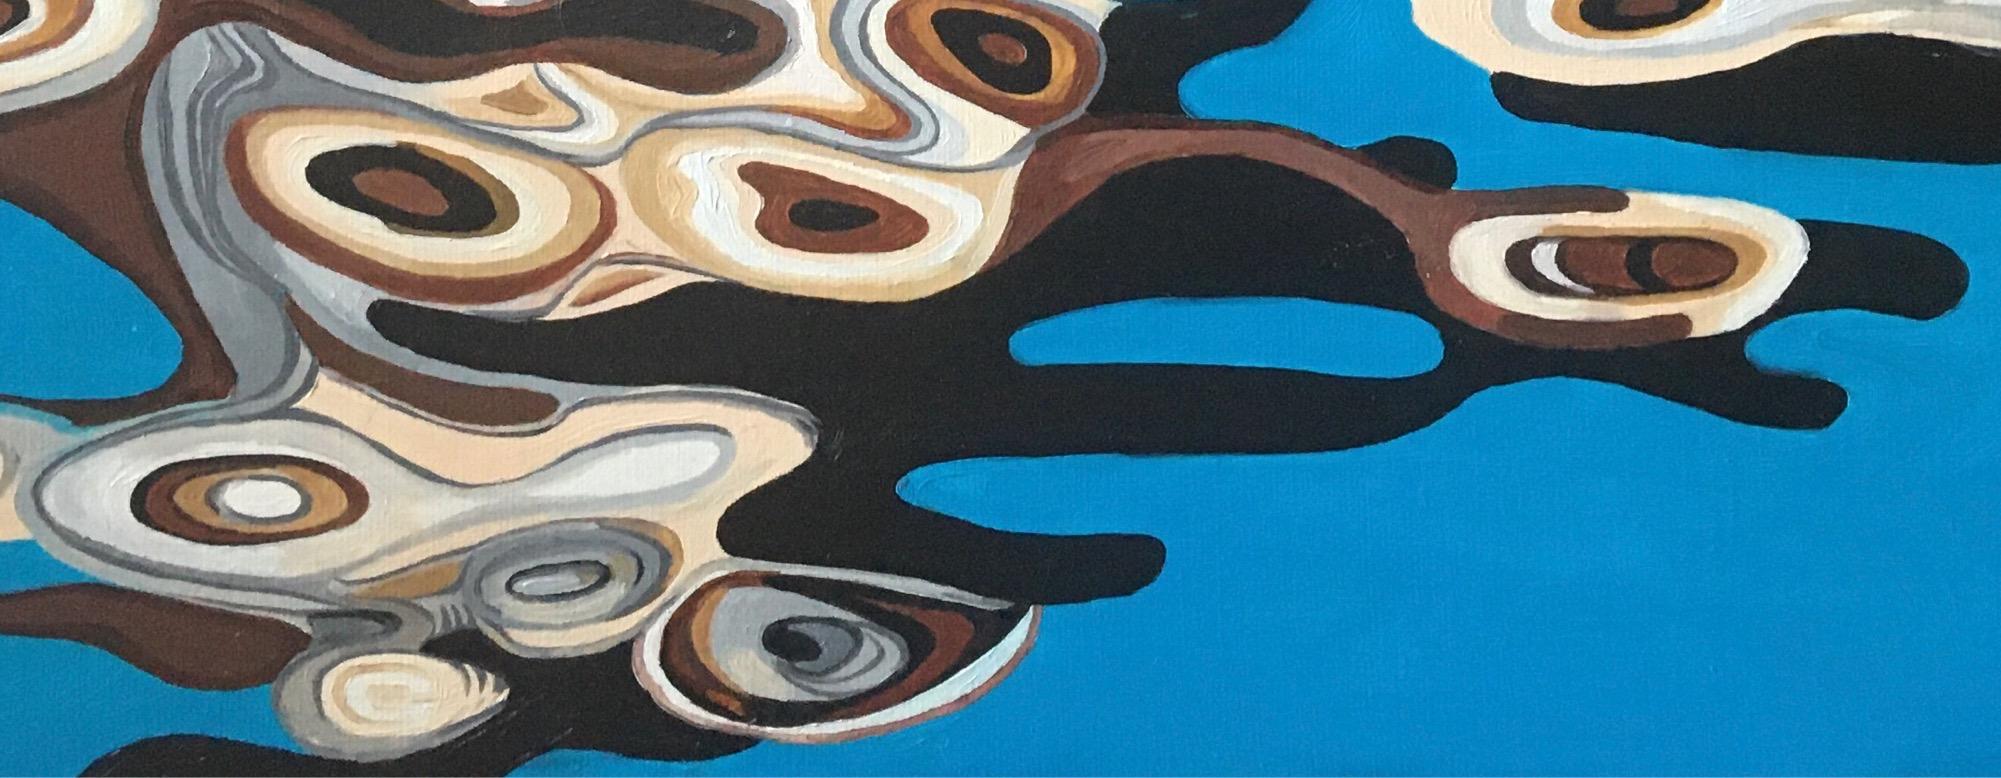 Peinture abstraite à la réflexion, réalisée en bleu, brun, beige, orange et gris - Abstrait Painting par Galin R